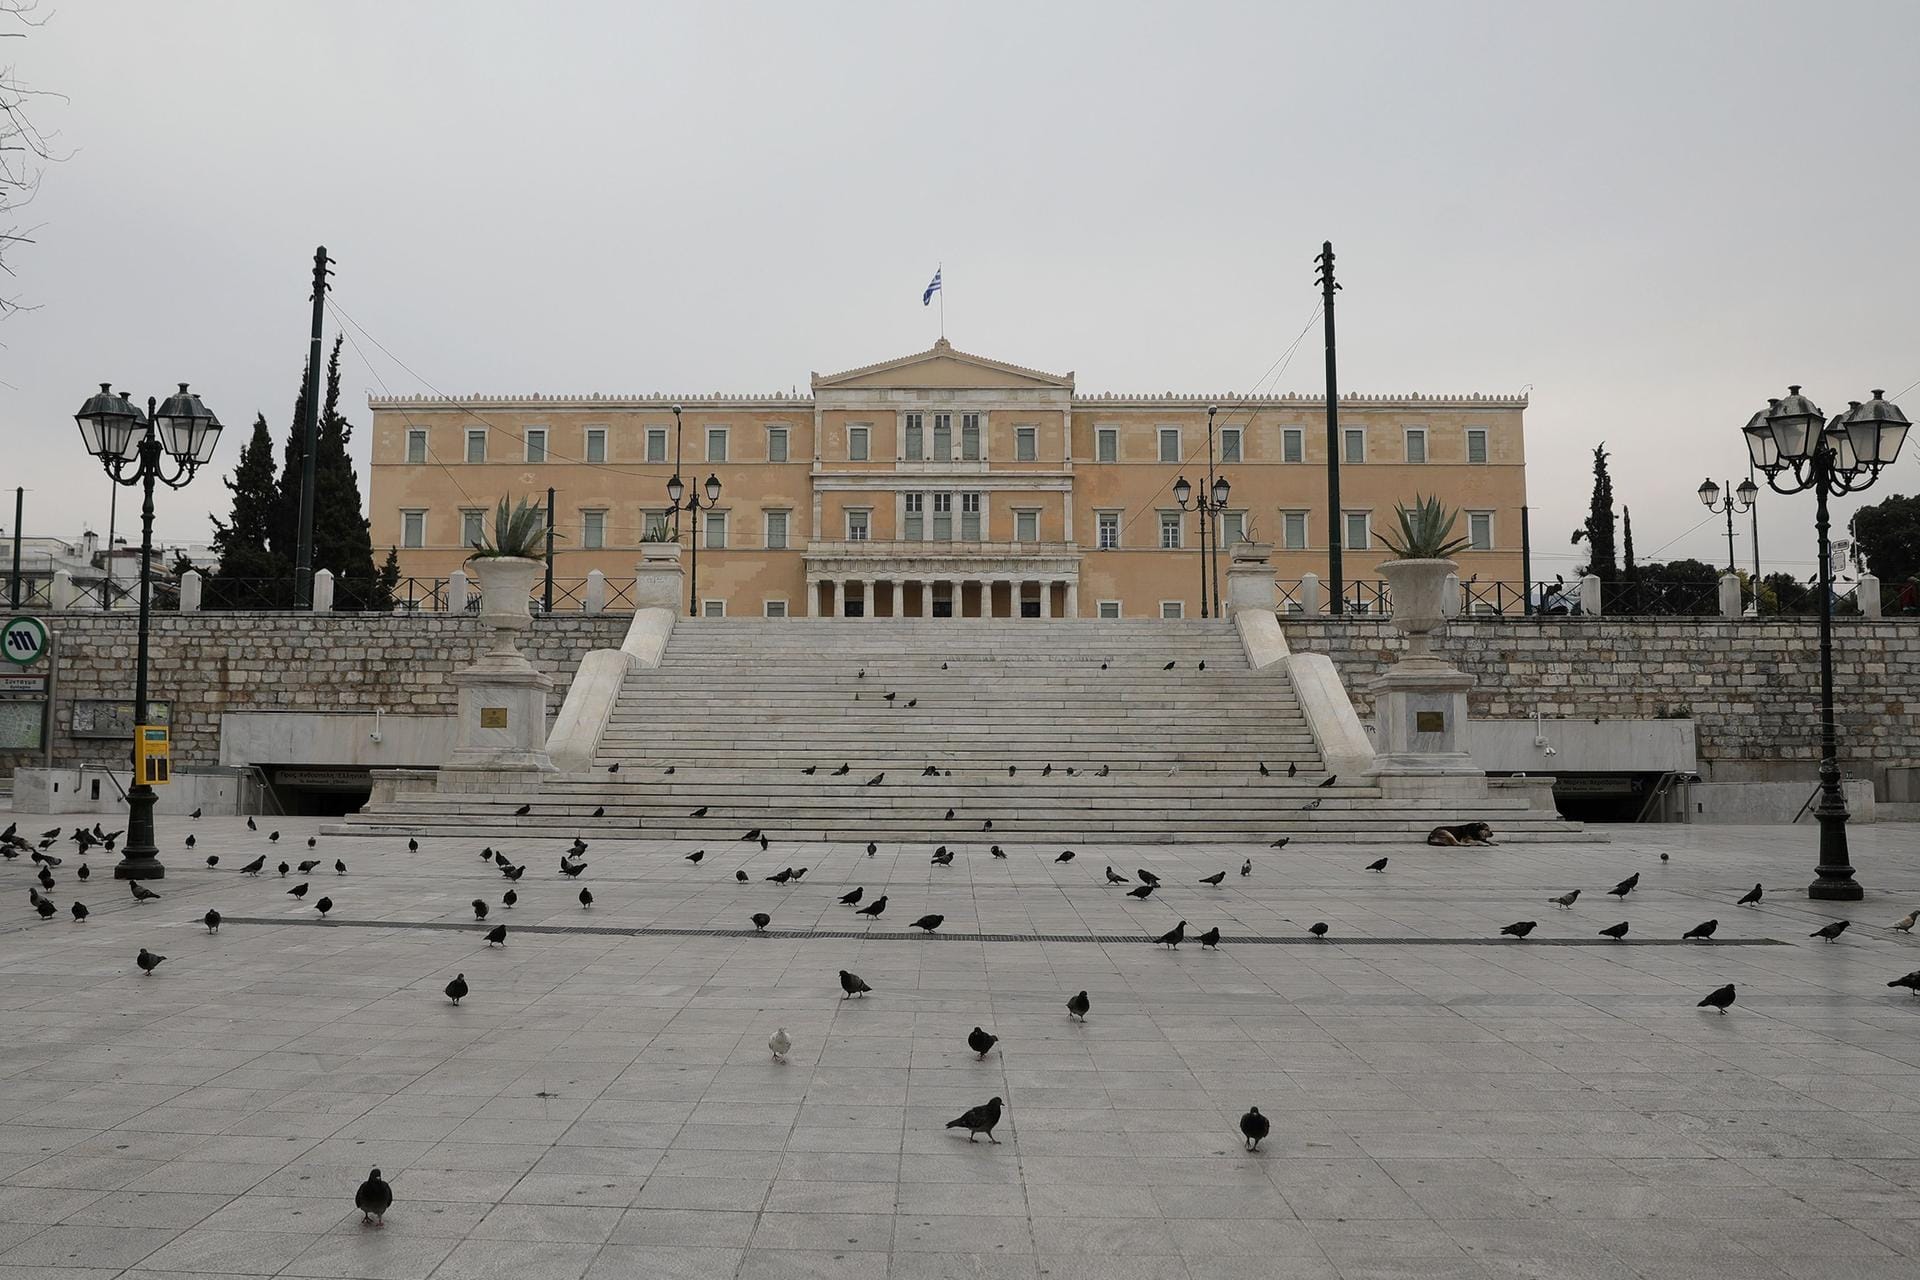 Athen, Griechenland: Auch in Griechenland häufen sich die Corona-Fälle. Der Syntagma-Platz im Herzen der griechischen Hauptstadt ist menschenleer.